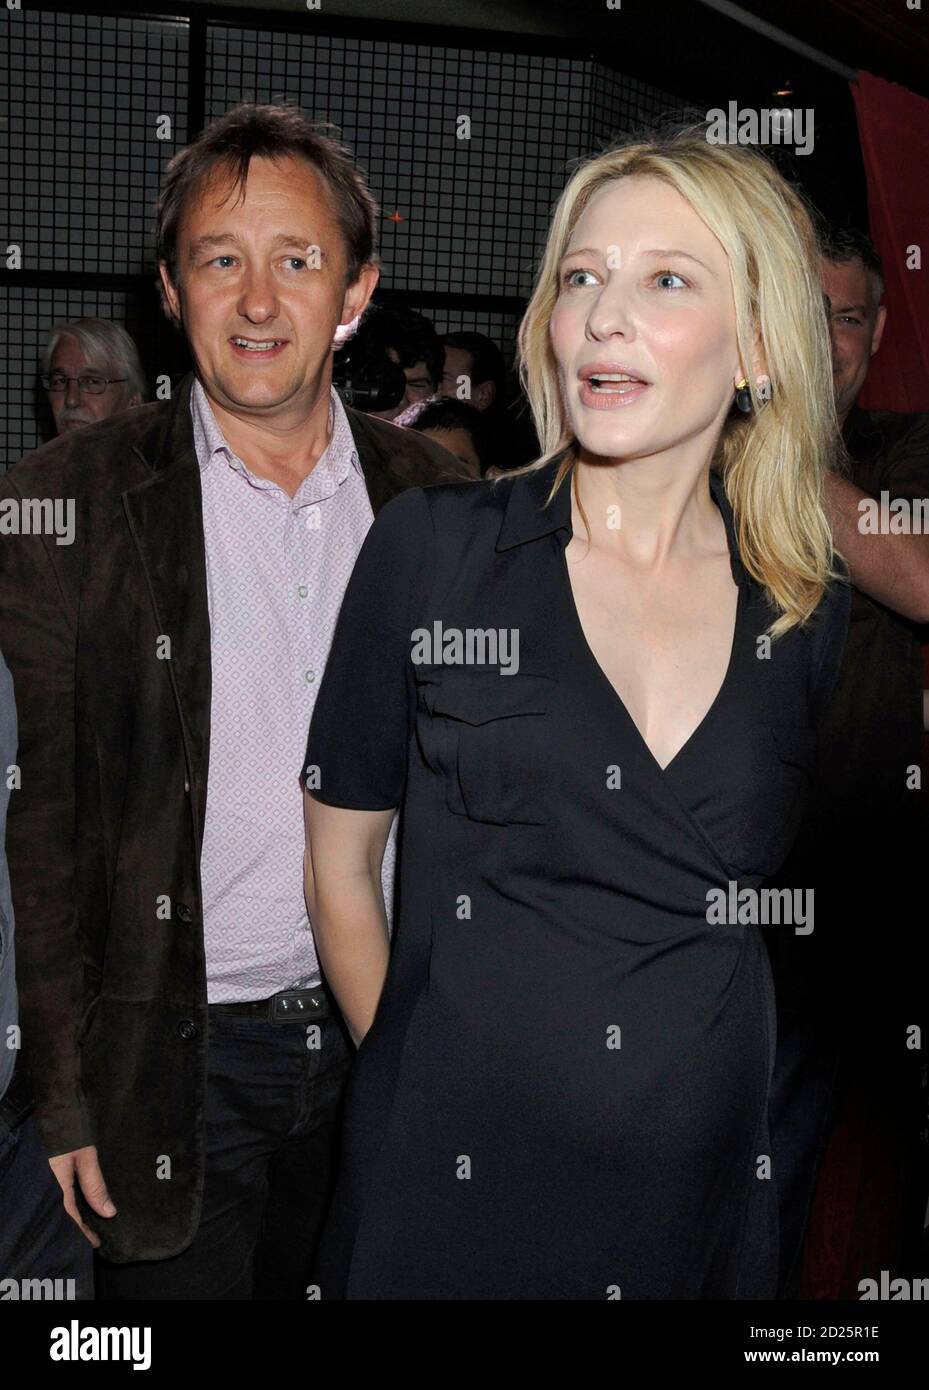 L'actrice Cate Blanchett arrive avec son mari Andrew Upton pour les Sydney Theatre Awards au Paddington RSL Club à Sydney le 21 janvier 2008. REUTERS/Patrick Riviere (AUSTRALIE) Banque D'Images